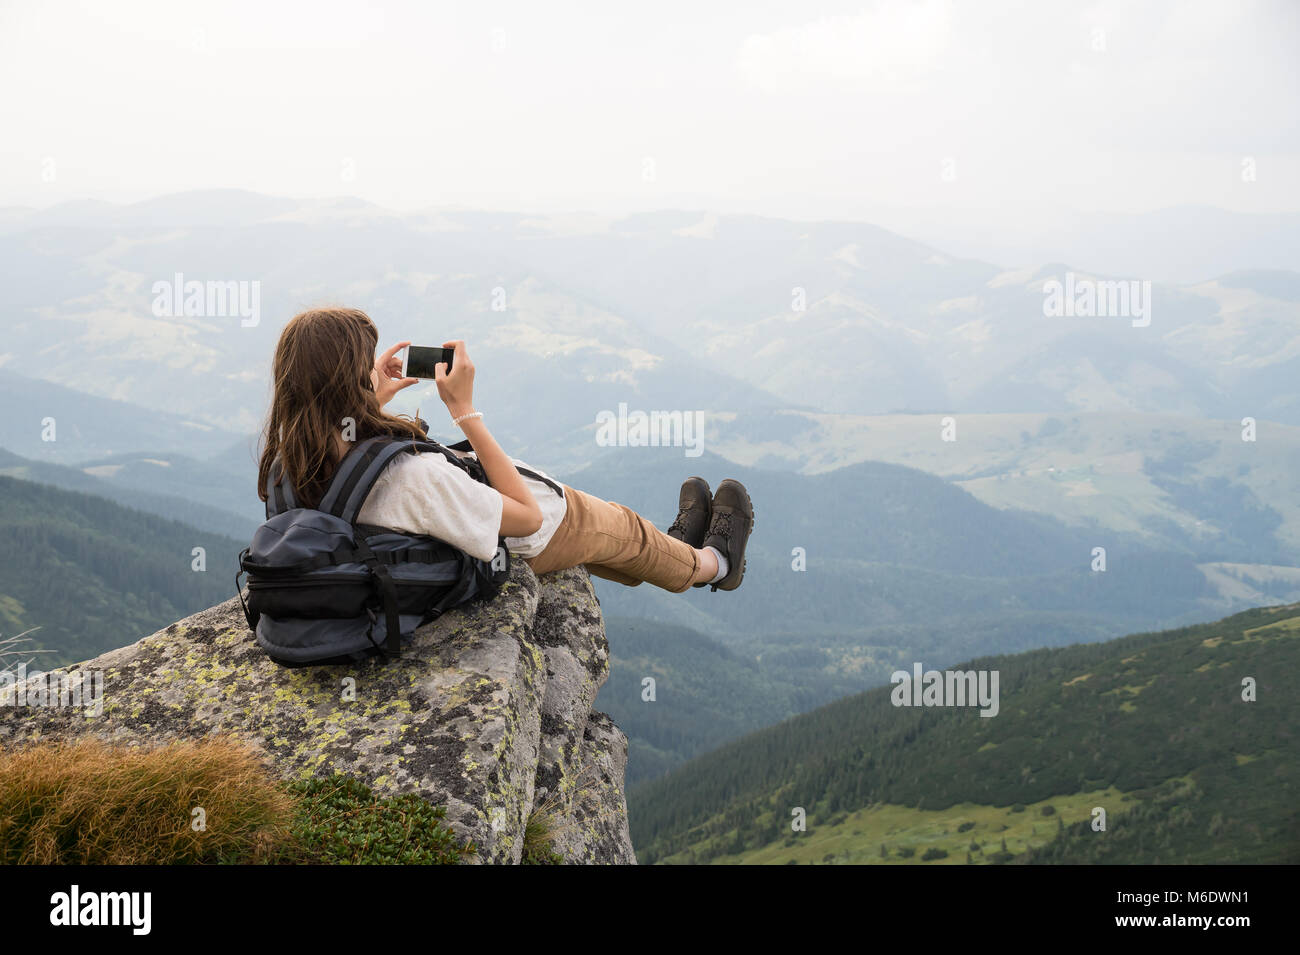 Escursionista ragazza con zaino prendendo autoritratto in uno splendido scenario su una roccia in ucraino nei Carpazi Foto Stock